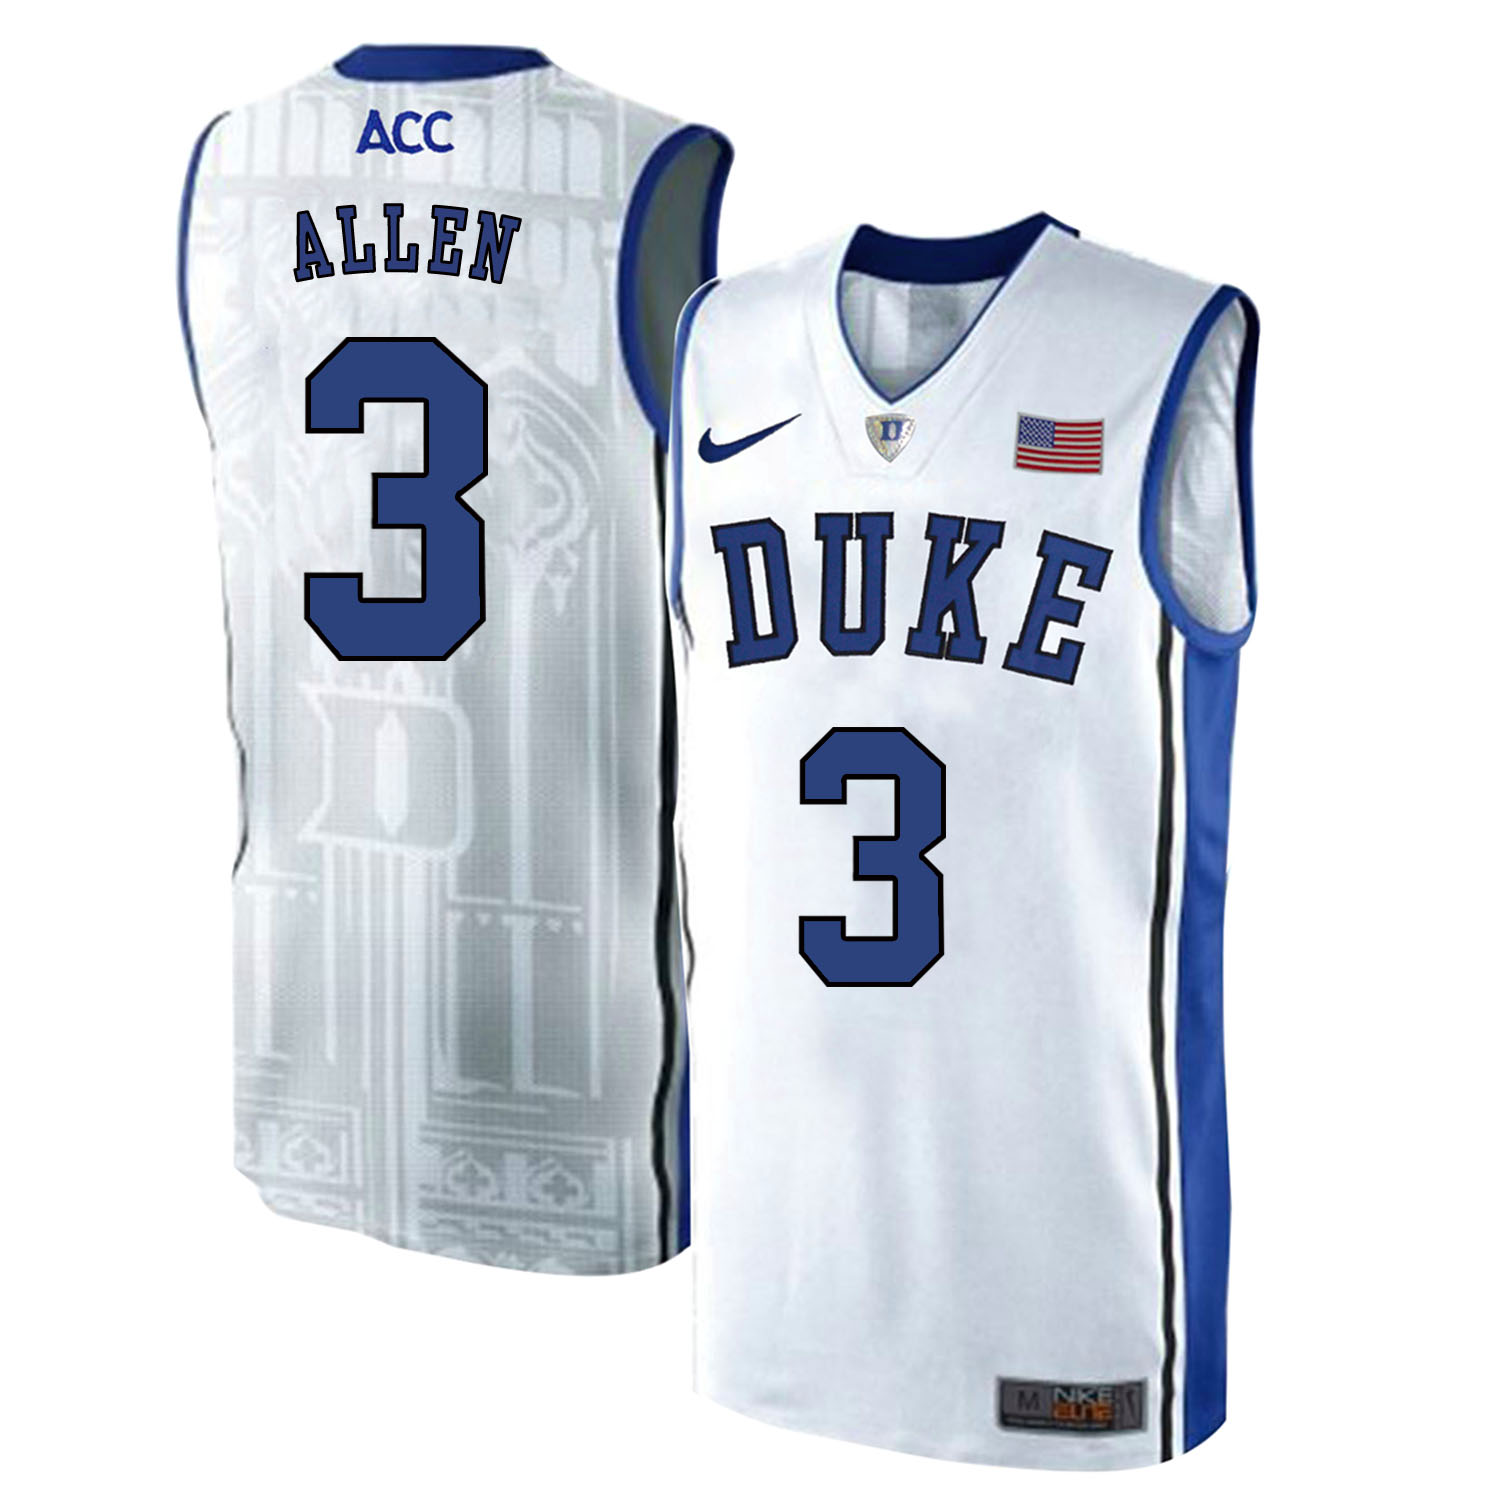 Duke Blue Devils 3 Garyson Allen White Elite Nike College Basketball Jersey